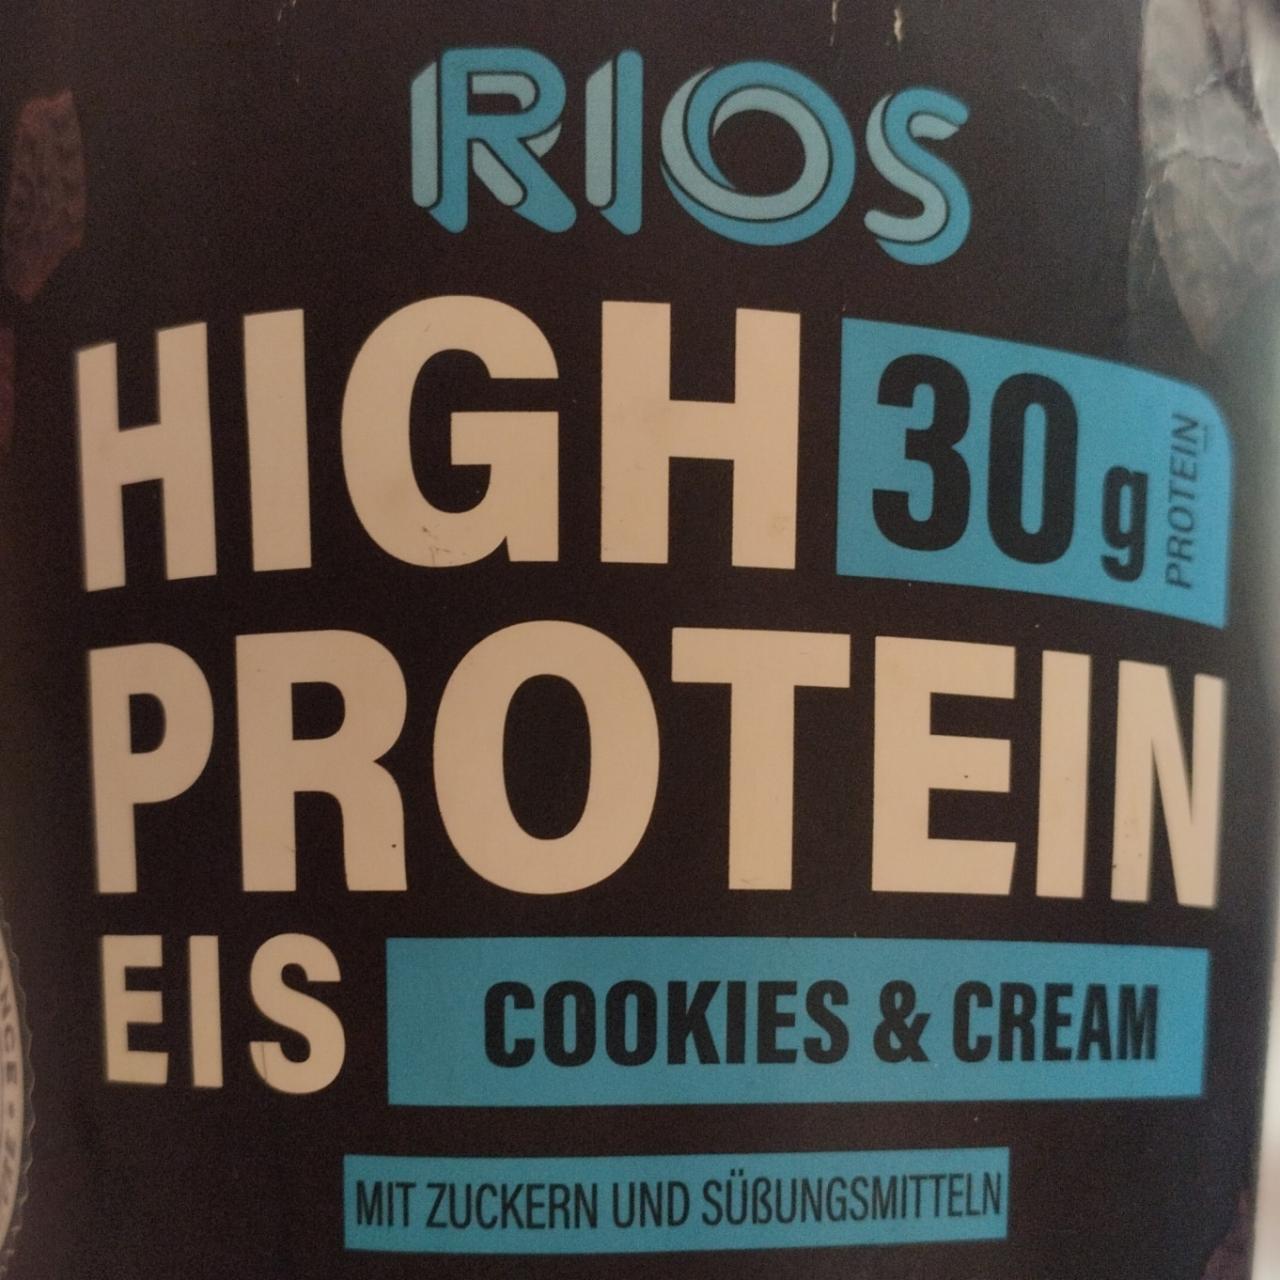 Фото - Rios High Protein Eis cookies&cream 30g